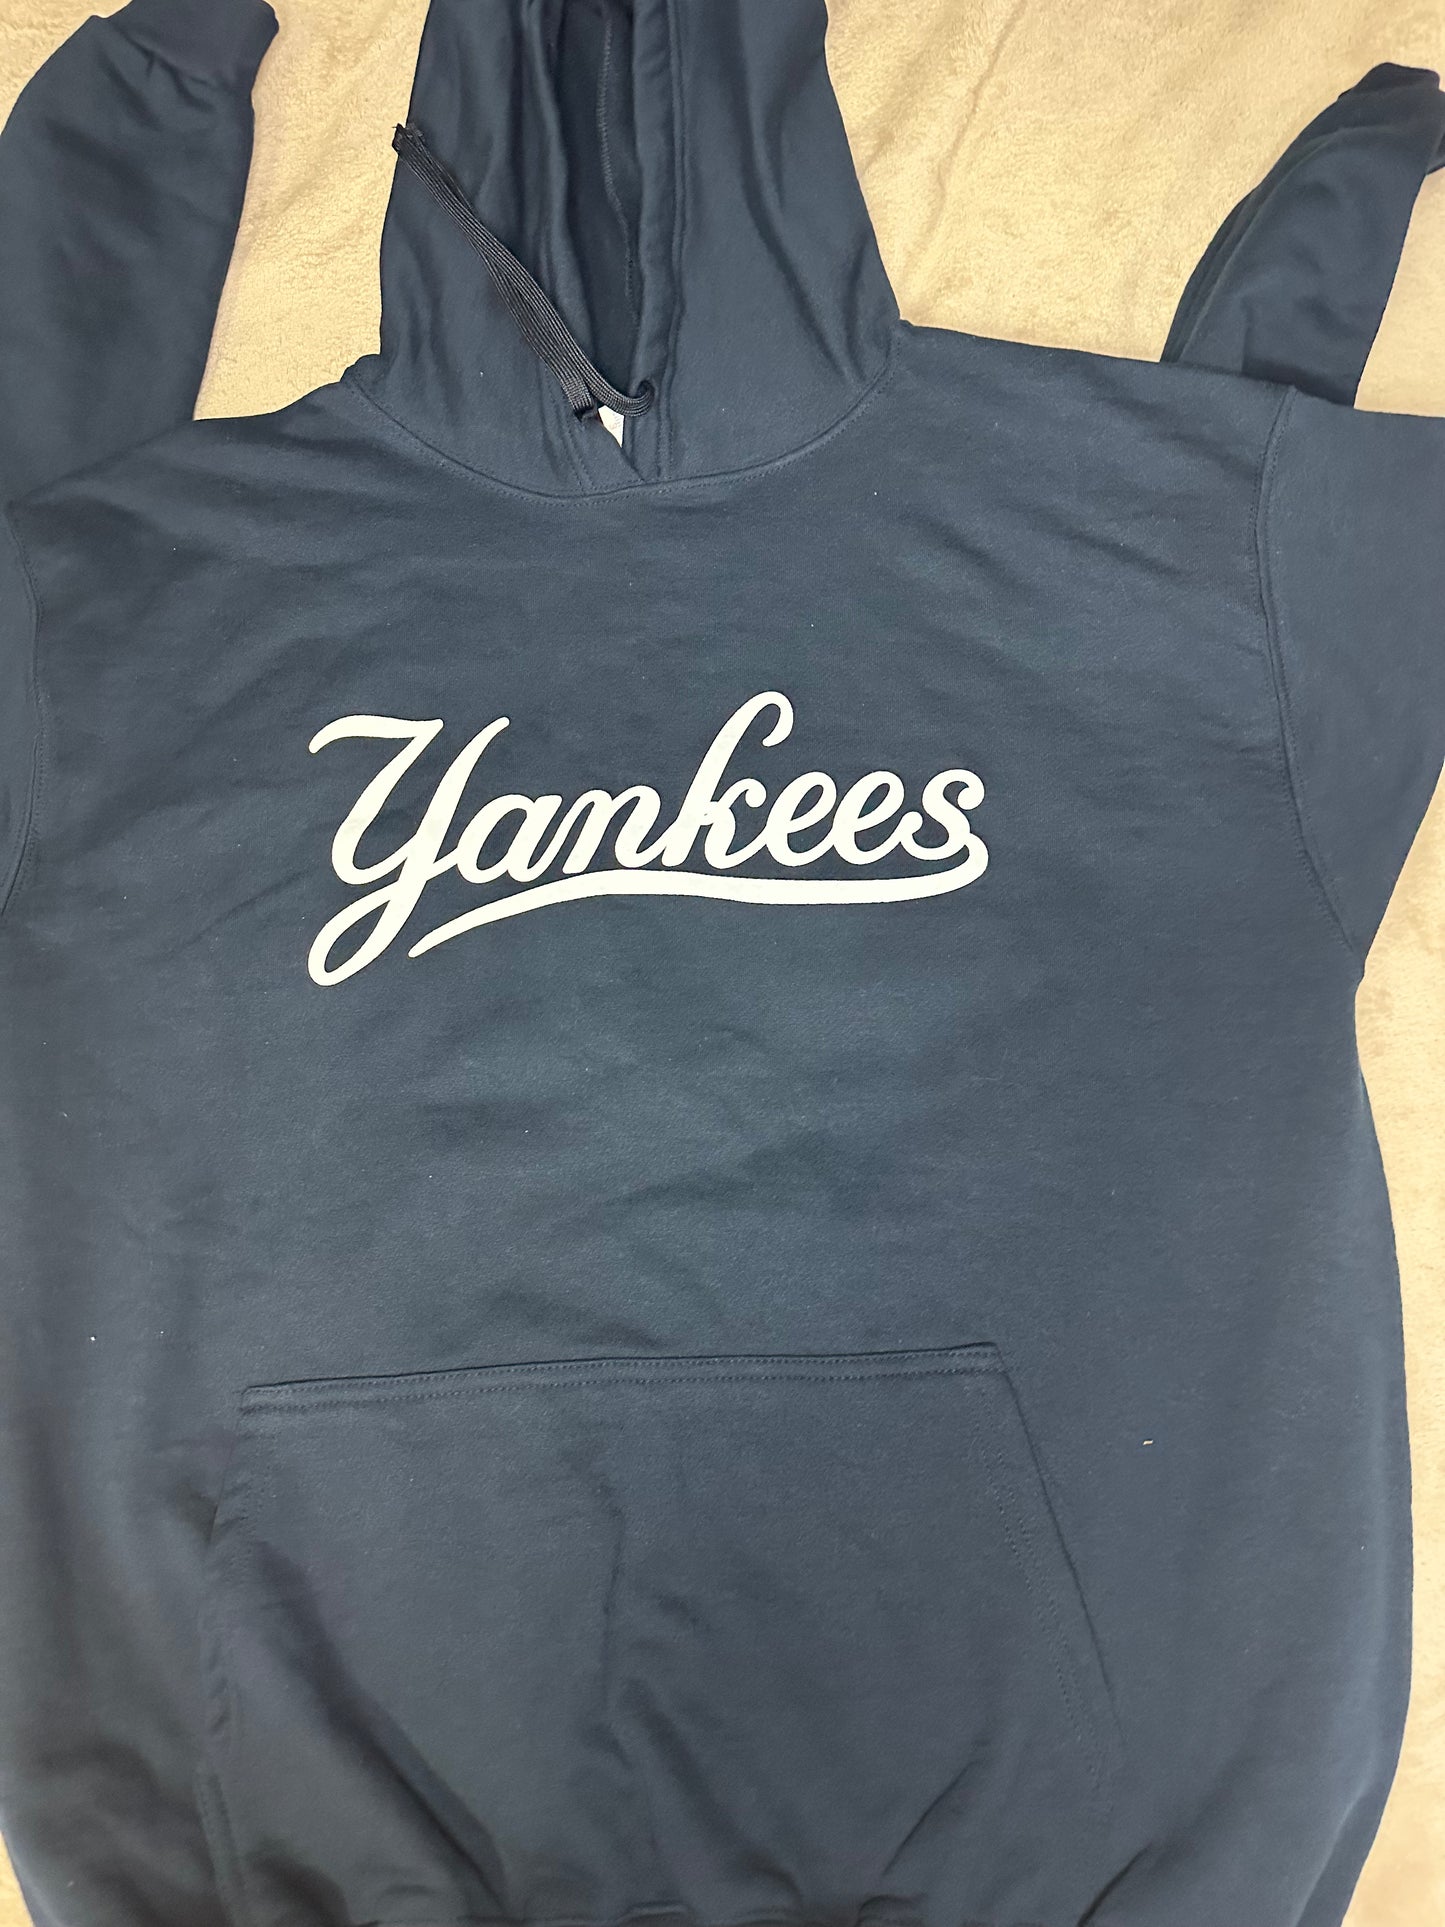 New York Yankees Hoodie